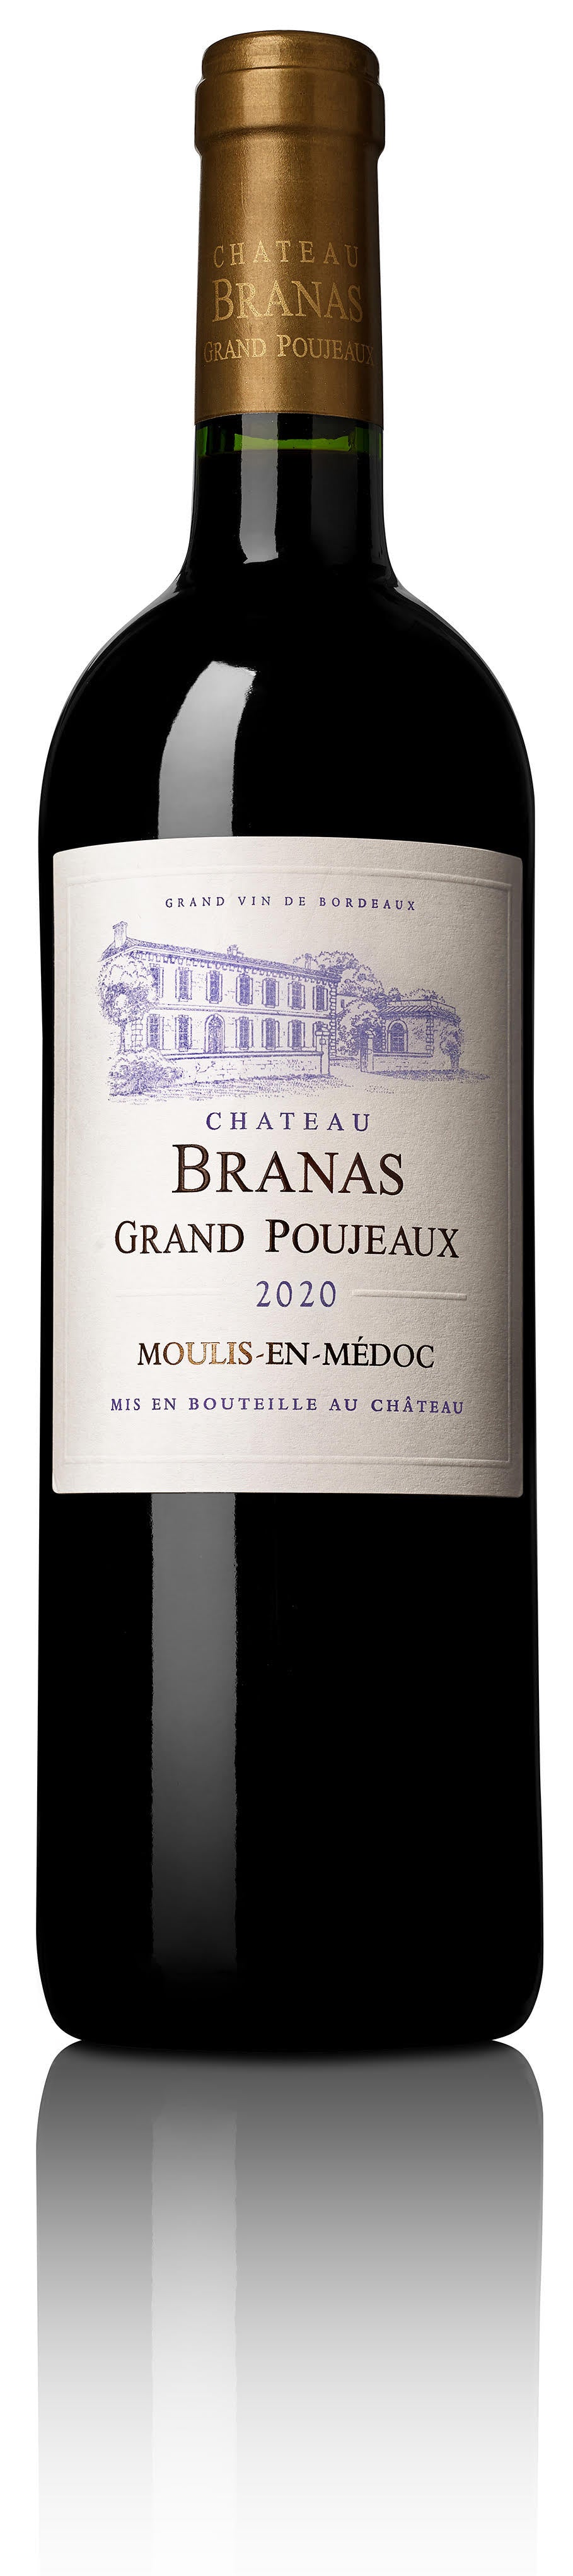 Château Branas Grand Poujeaux 2020